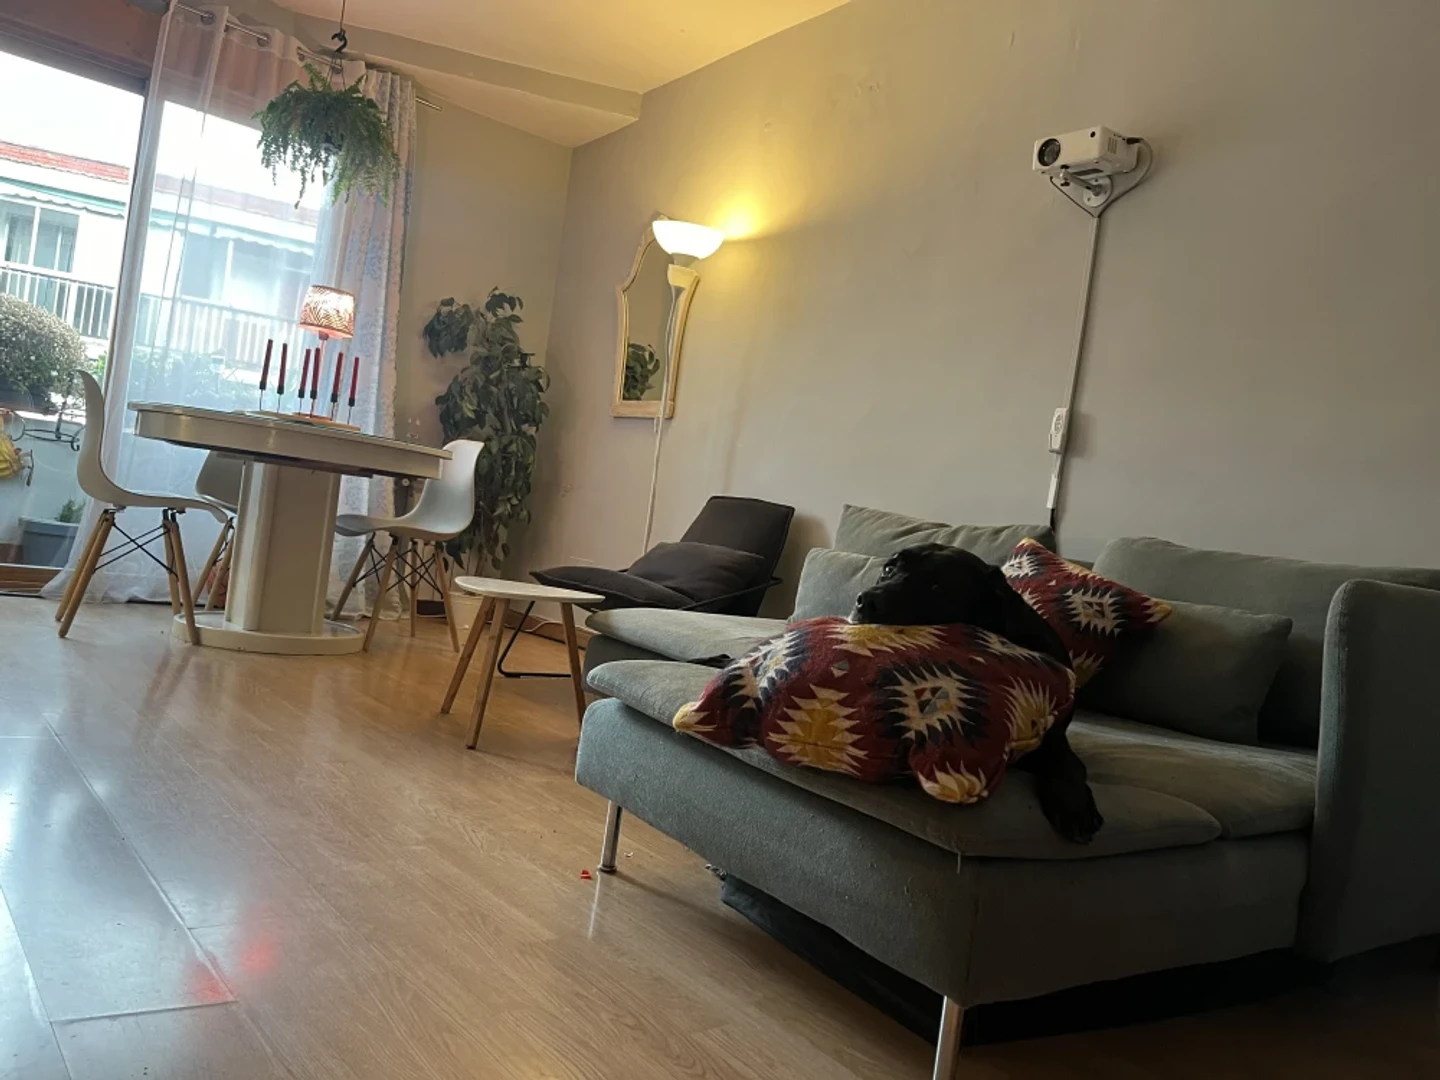 Alquiler de habitaciones por meses en Leganés